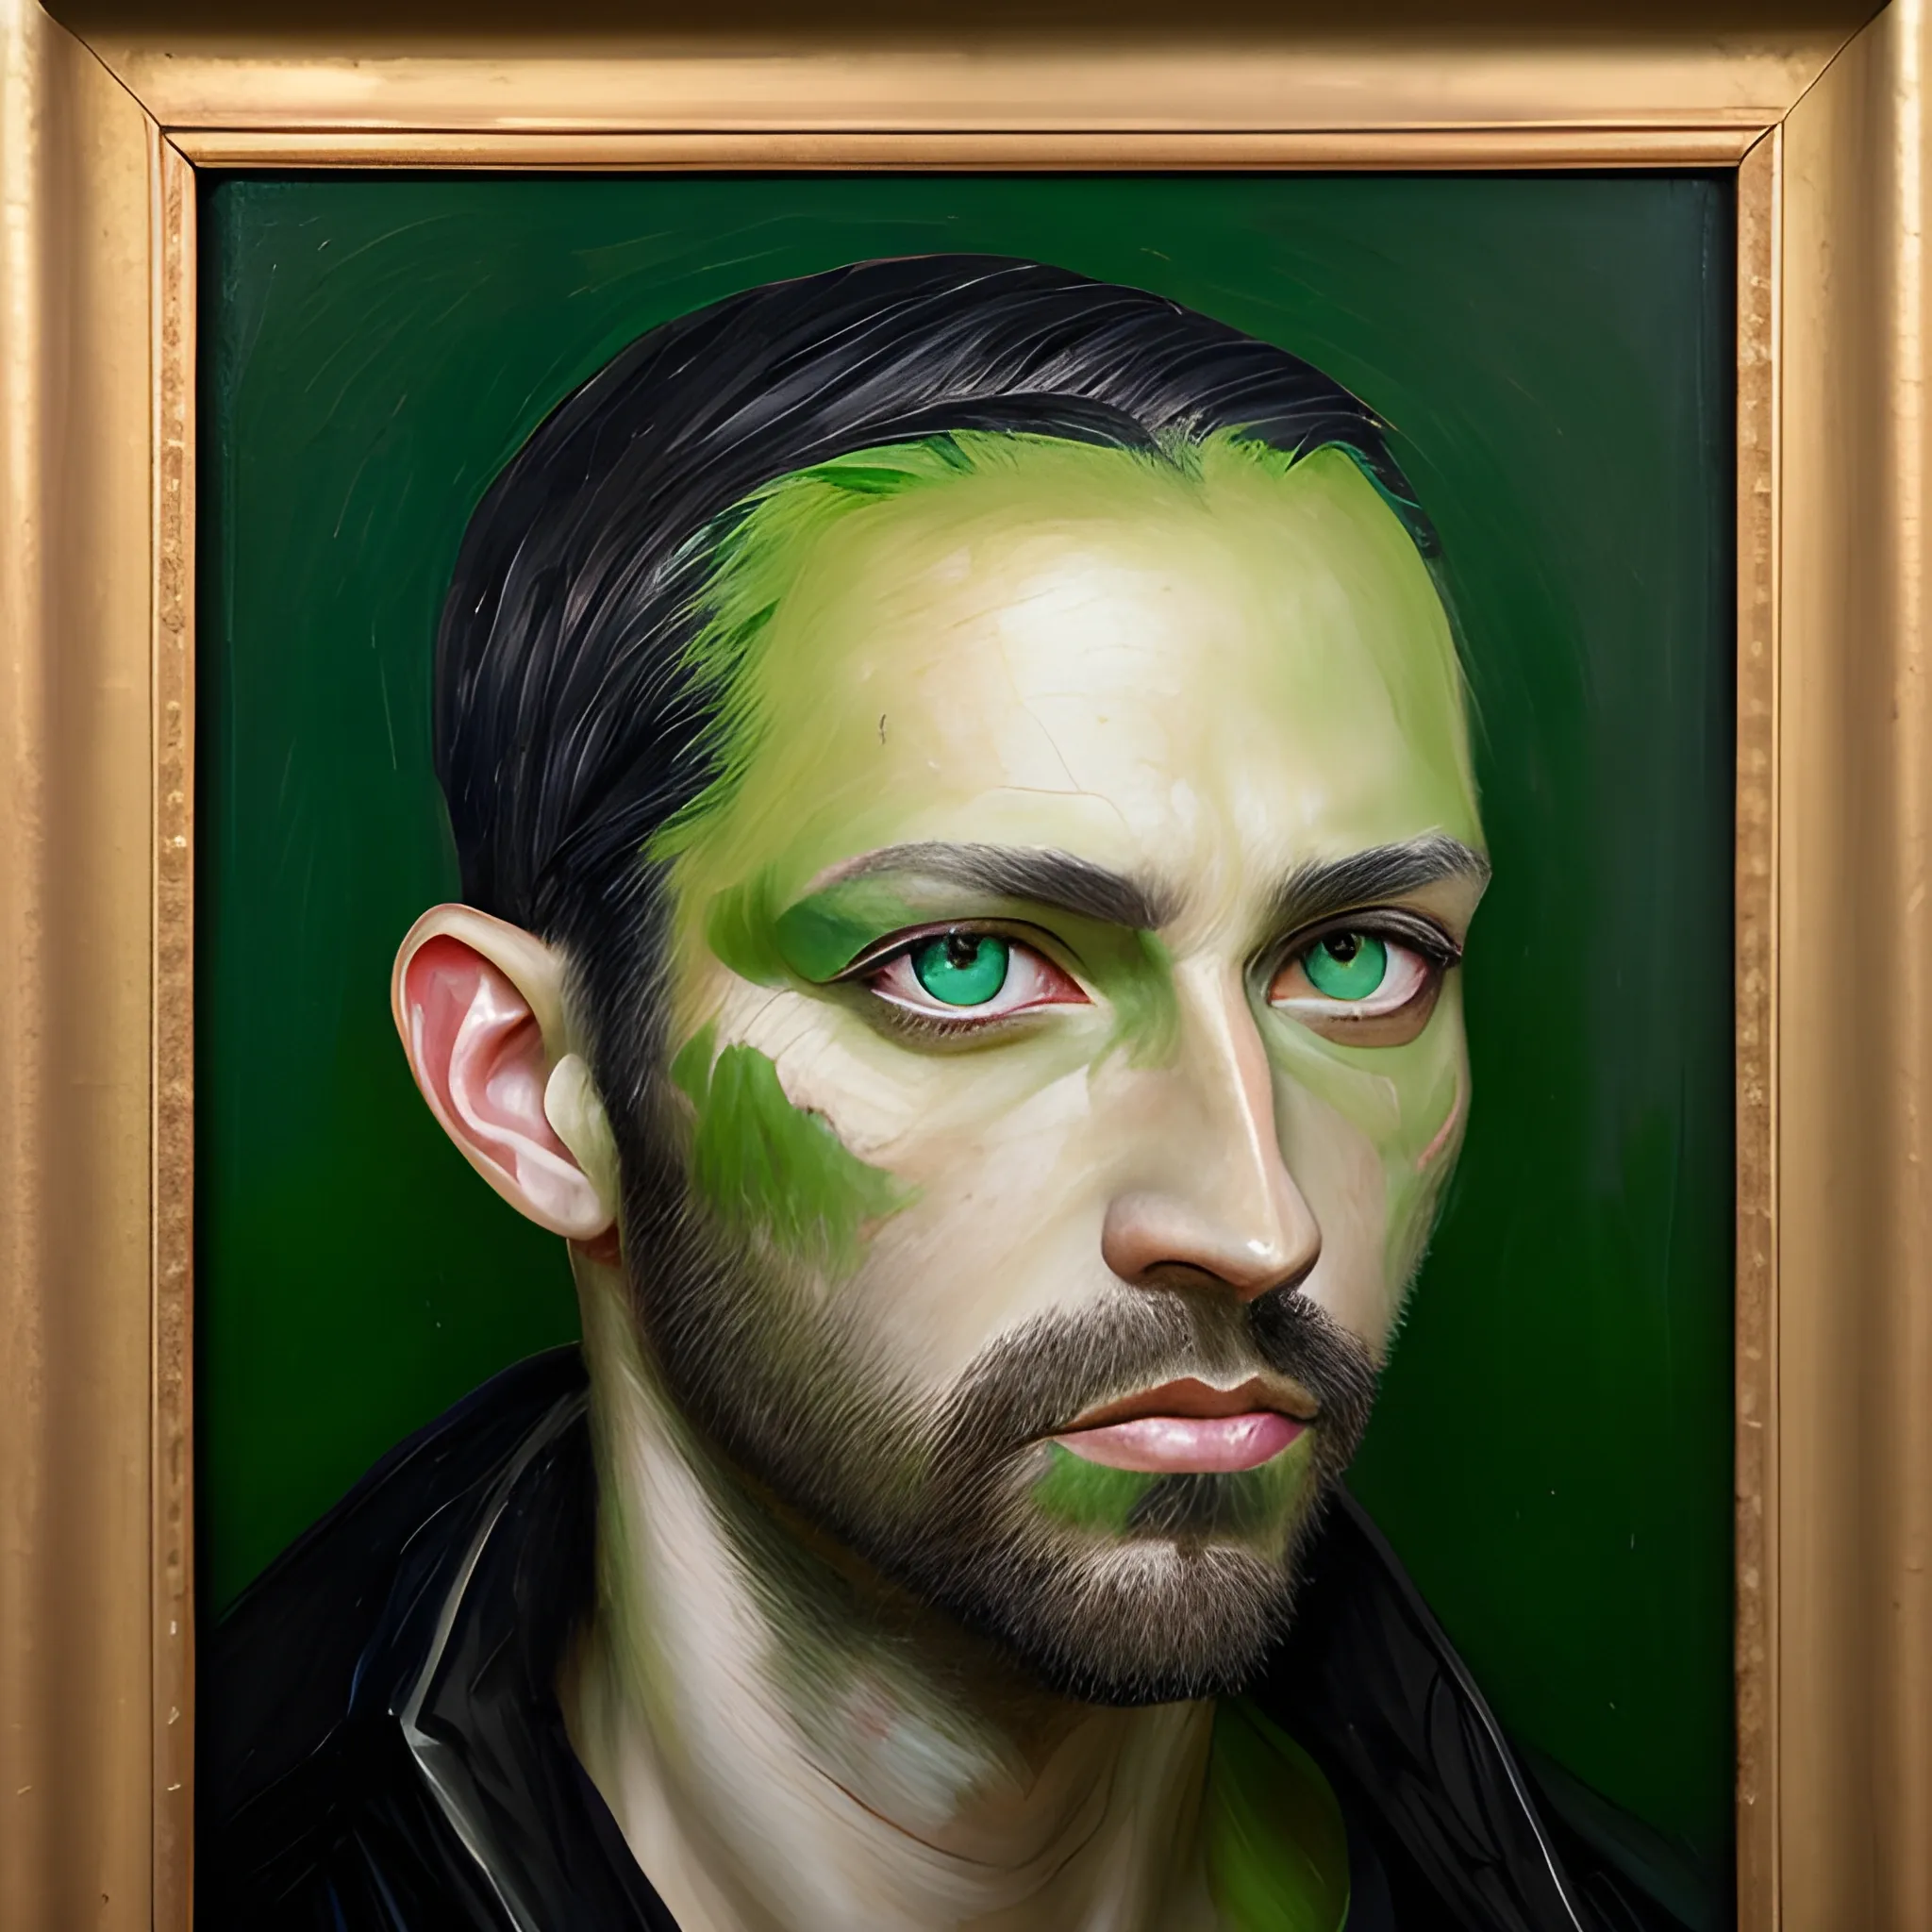 Men tansgender, 33 years old, black head, green eyes, Oil Painting, 